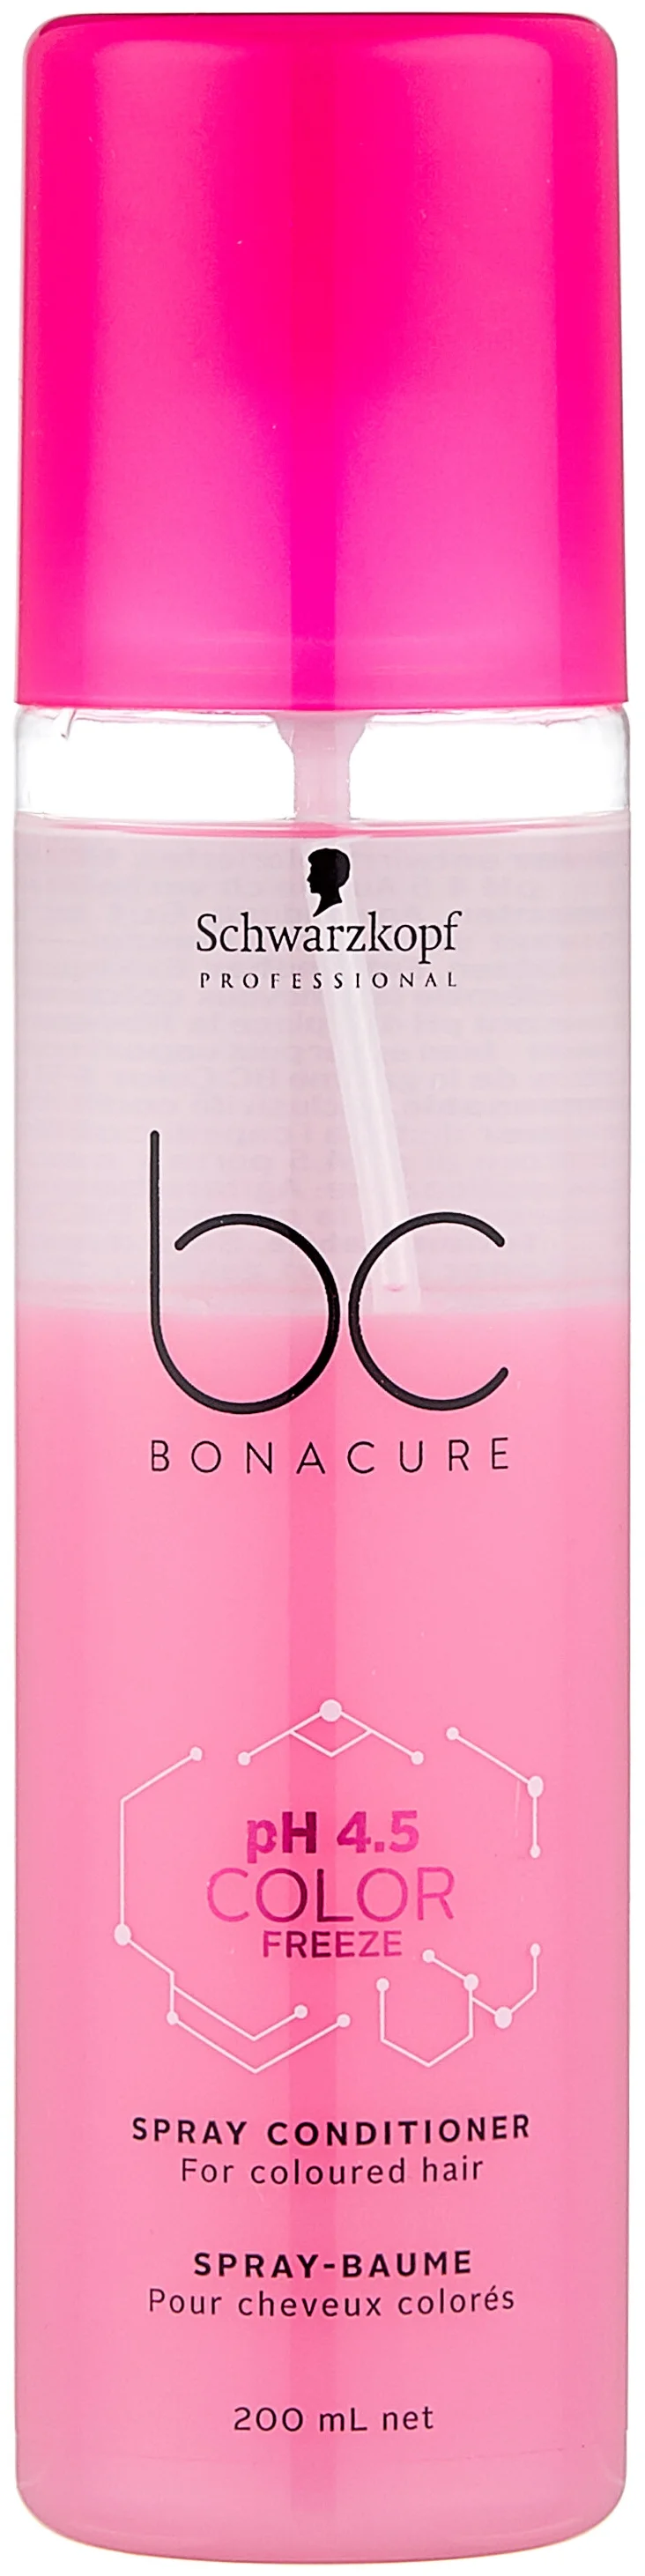 BC Bonacure Color Freeze pH 4.5 для окрашенных волос - для всех типов волос